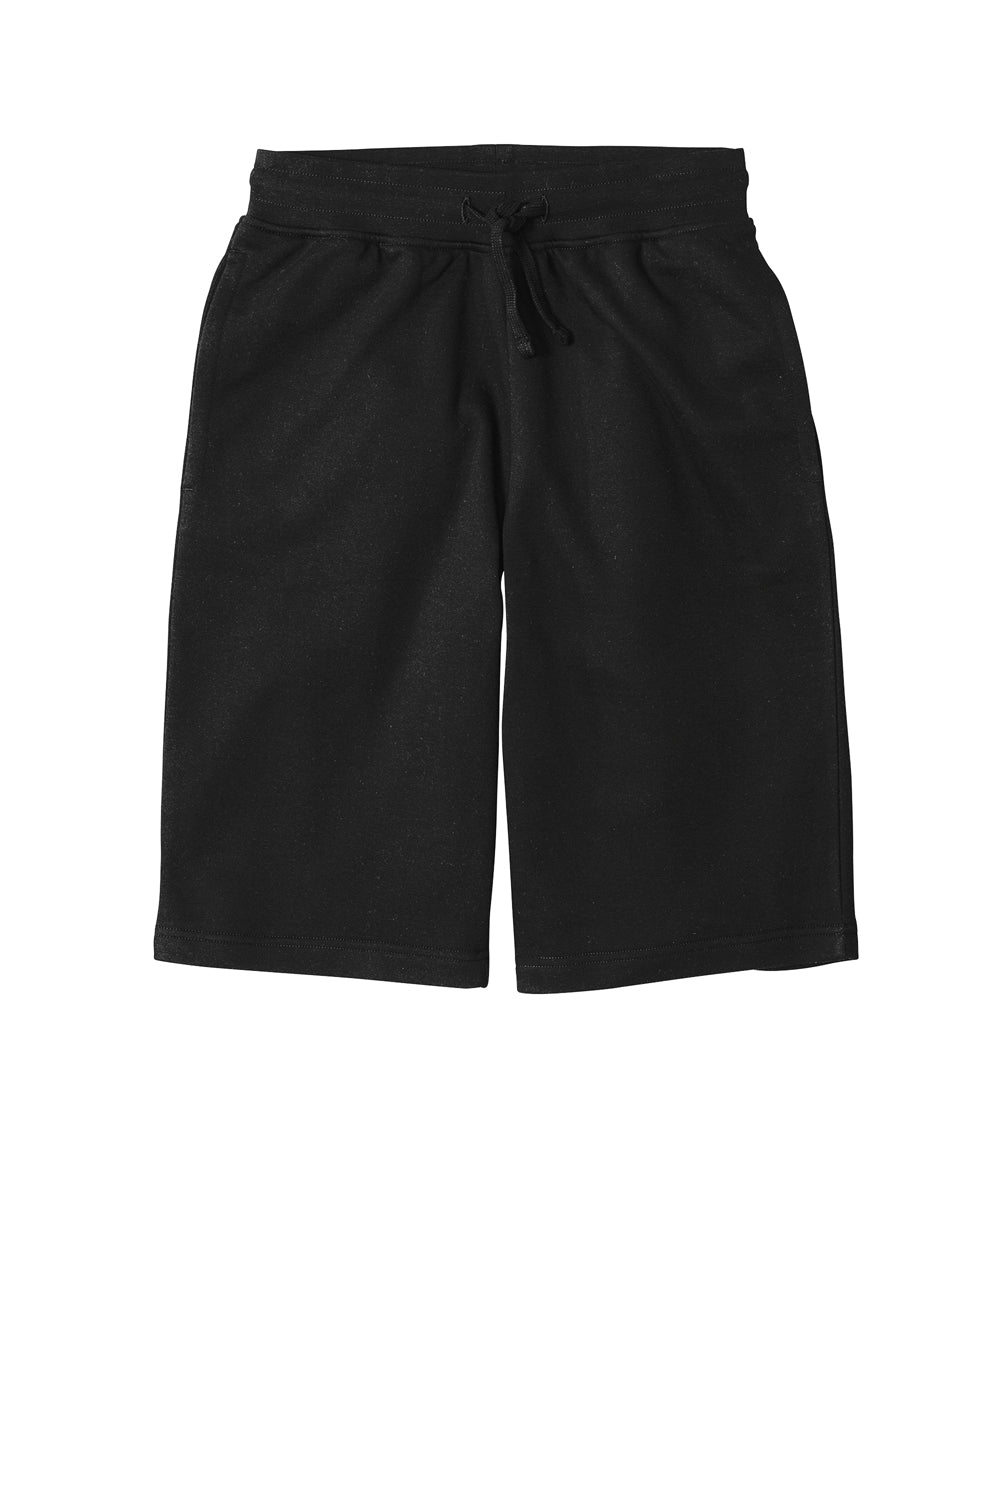 District DT6108 V.I.T. Fleece Shorts w/ Pockets Black Flat Front